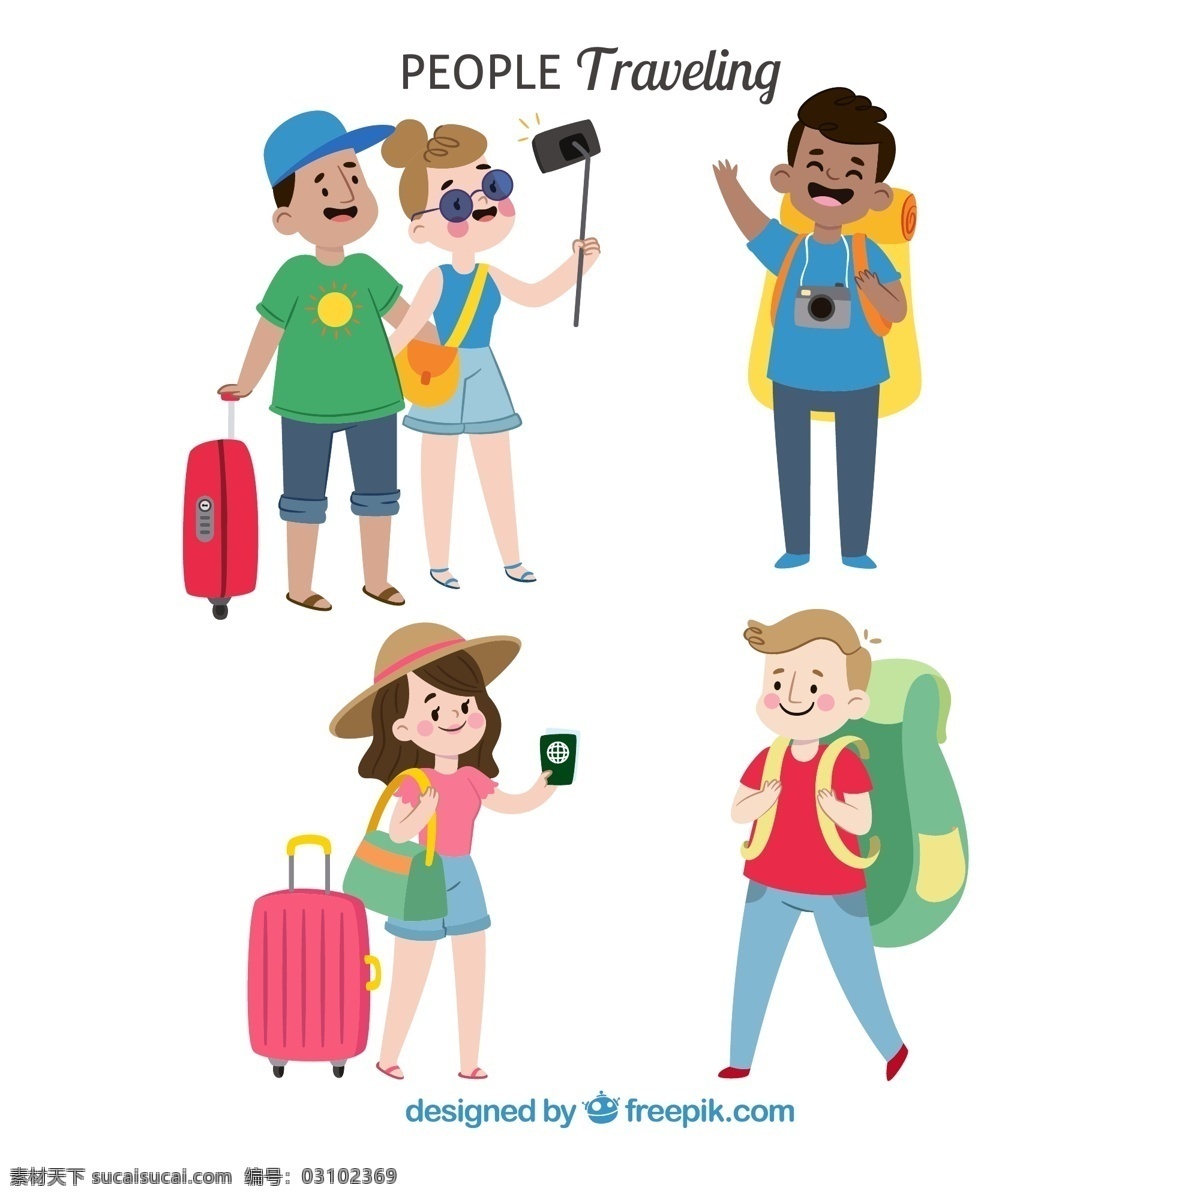 组 卡通 旅行 人物 护照 手机 旅行箱 背包 男子 女子 度假 动漫动画 动漫人物